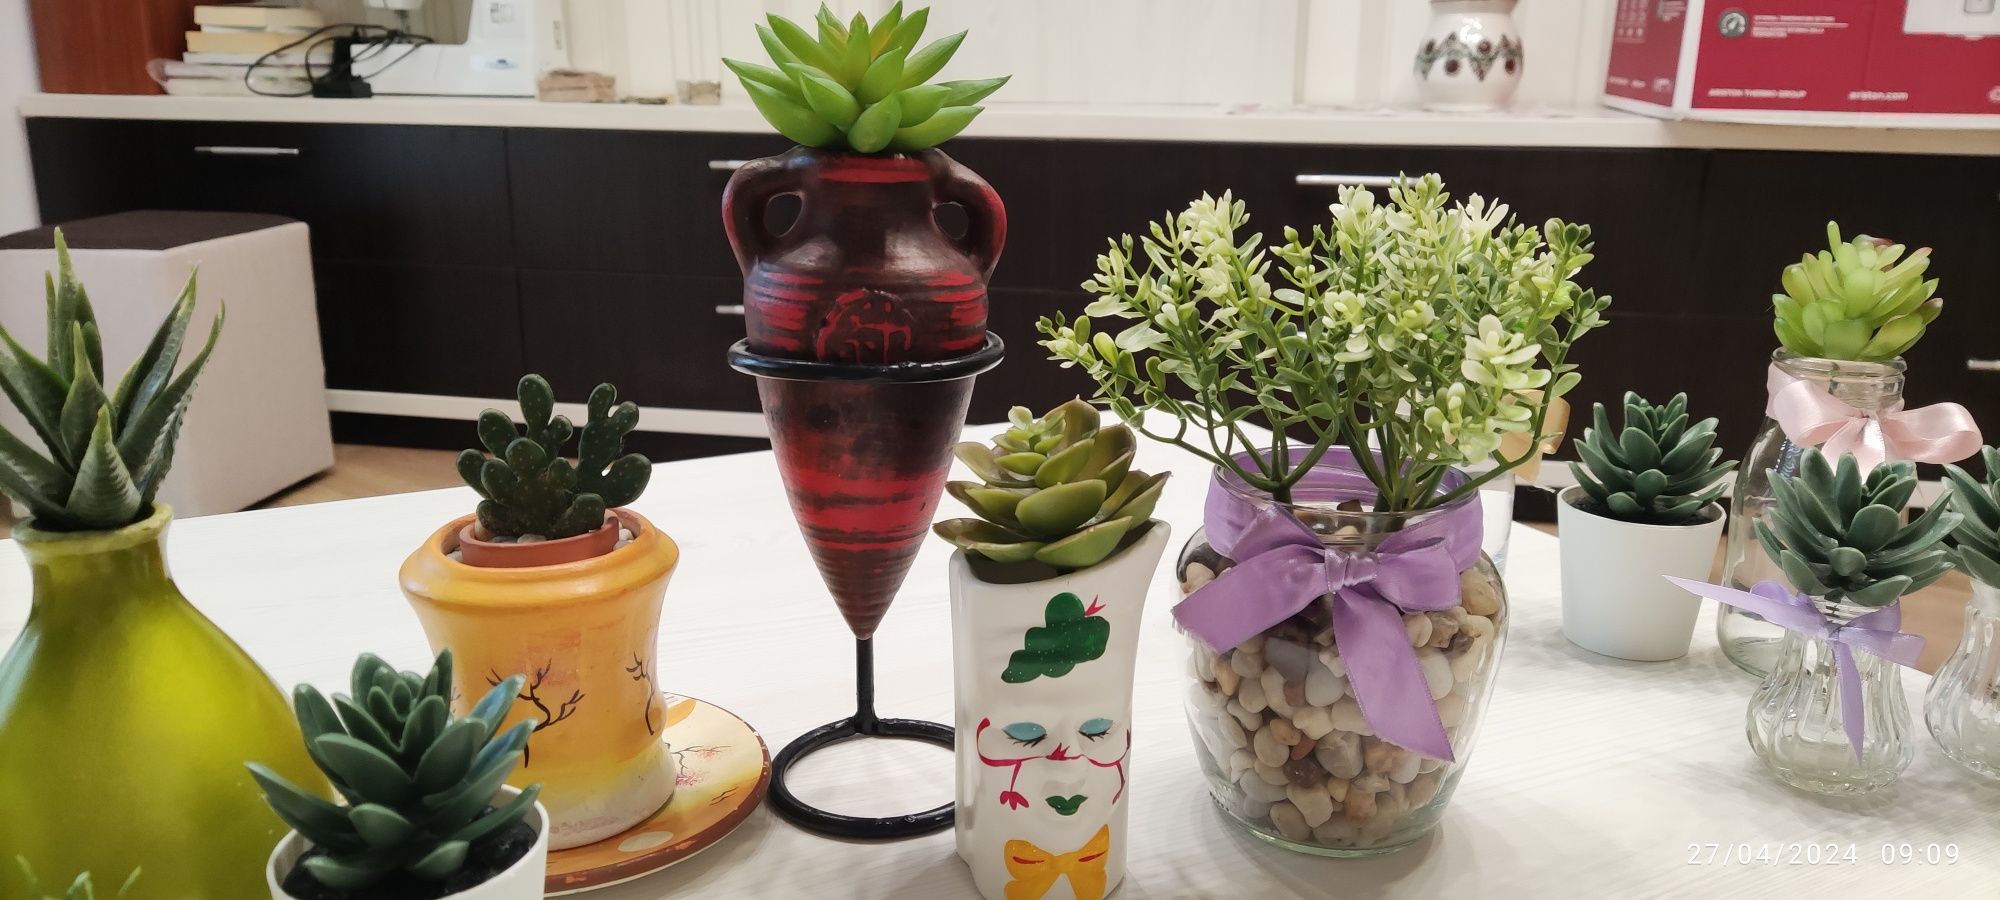 Vaze și recipiente decorative unicat pentru aranjamente florale divers